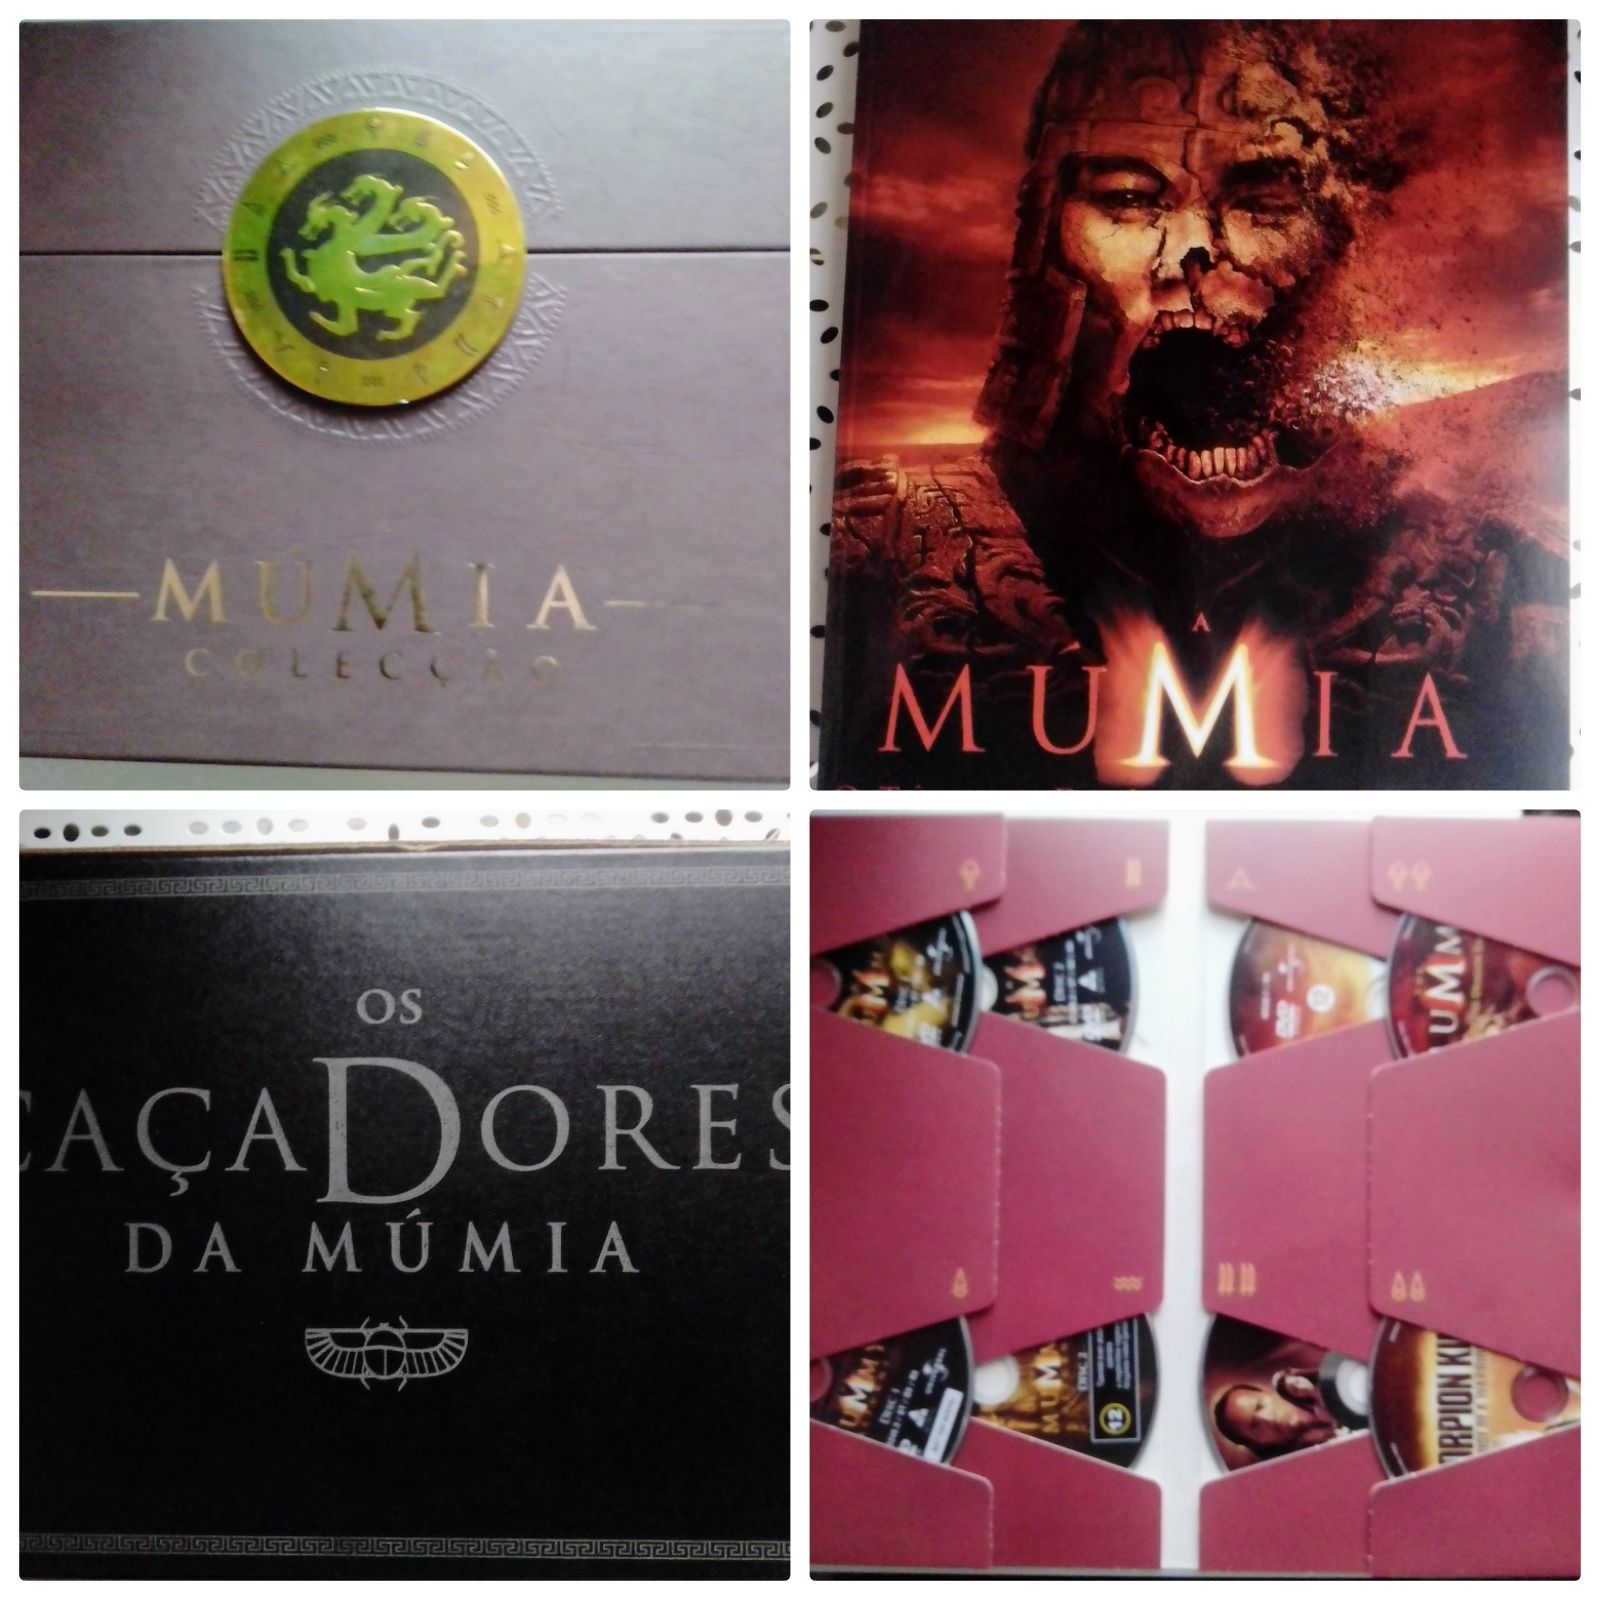 Edição de Luxo Os Caçadores da Múmia DVDs e jogo.